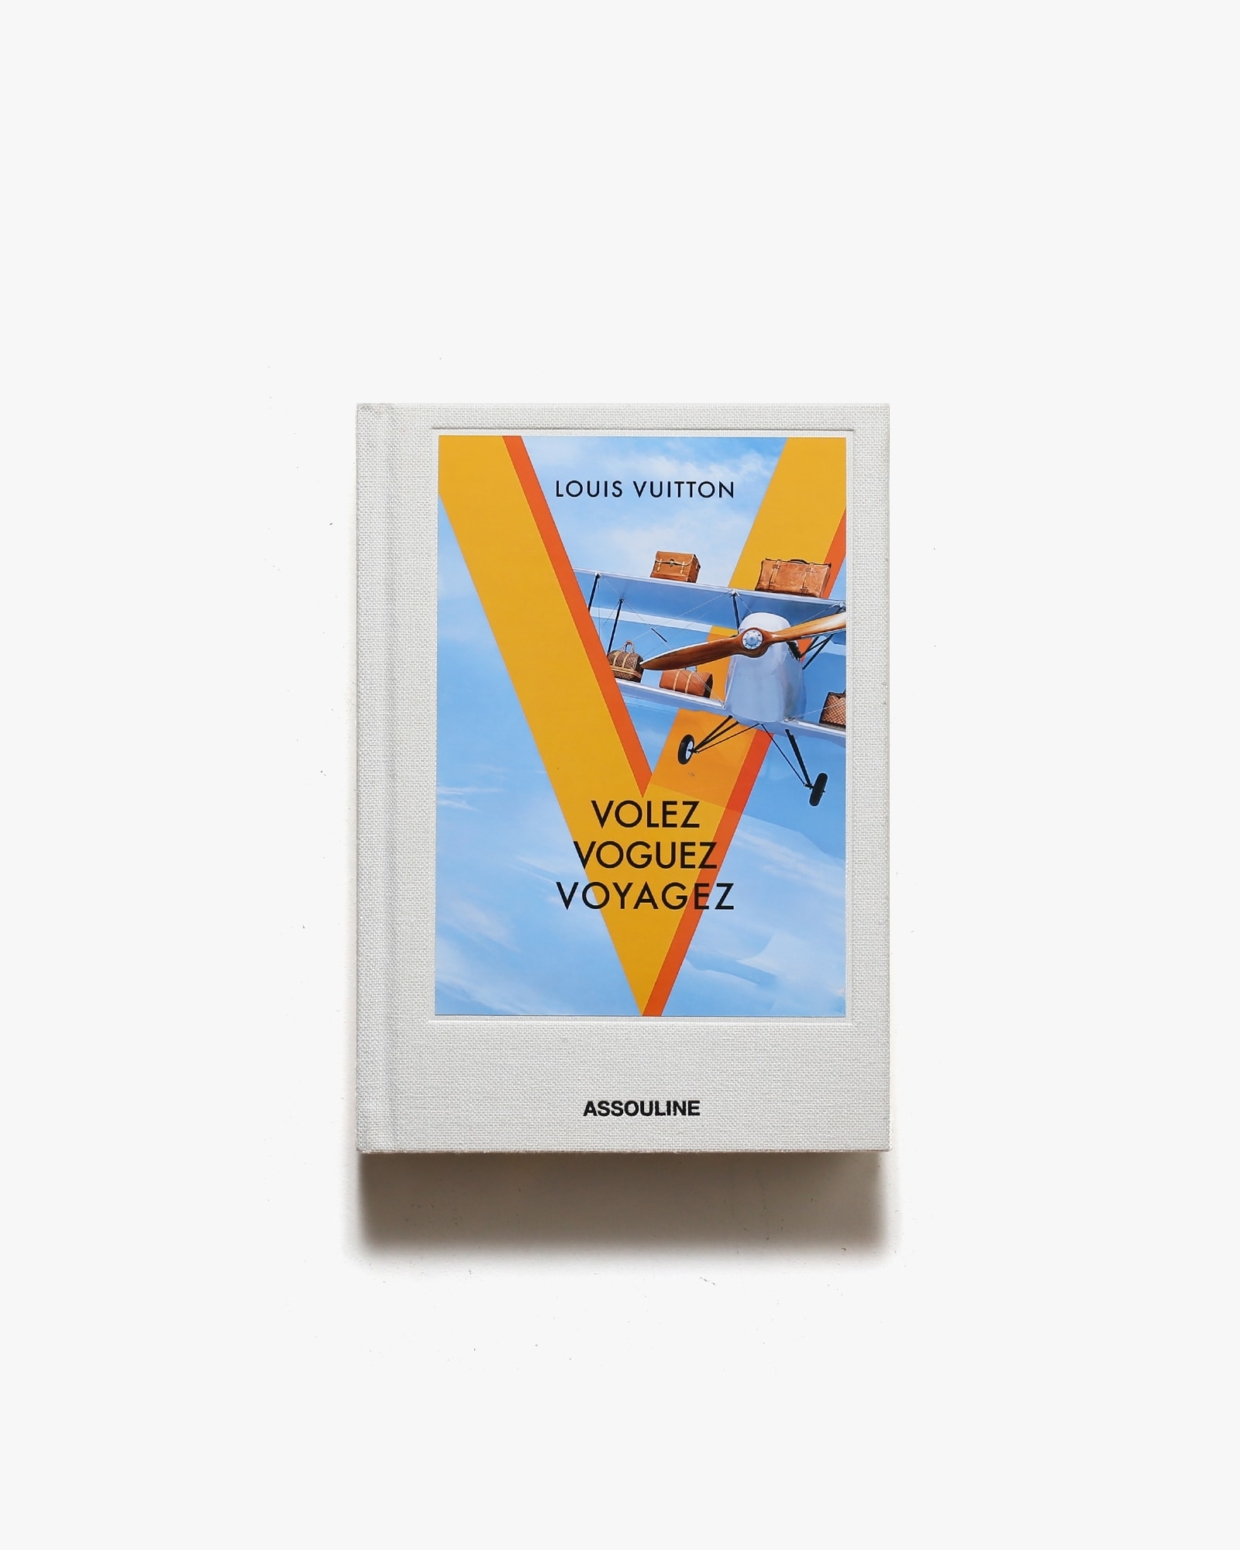 Louis Vuitton: Volez Voguez Voyagez 空へ、海へ、彼方へ 旅するルイ・ヴィトン | 著者名